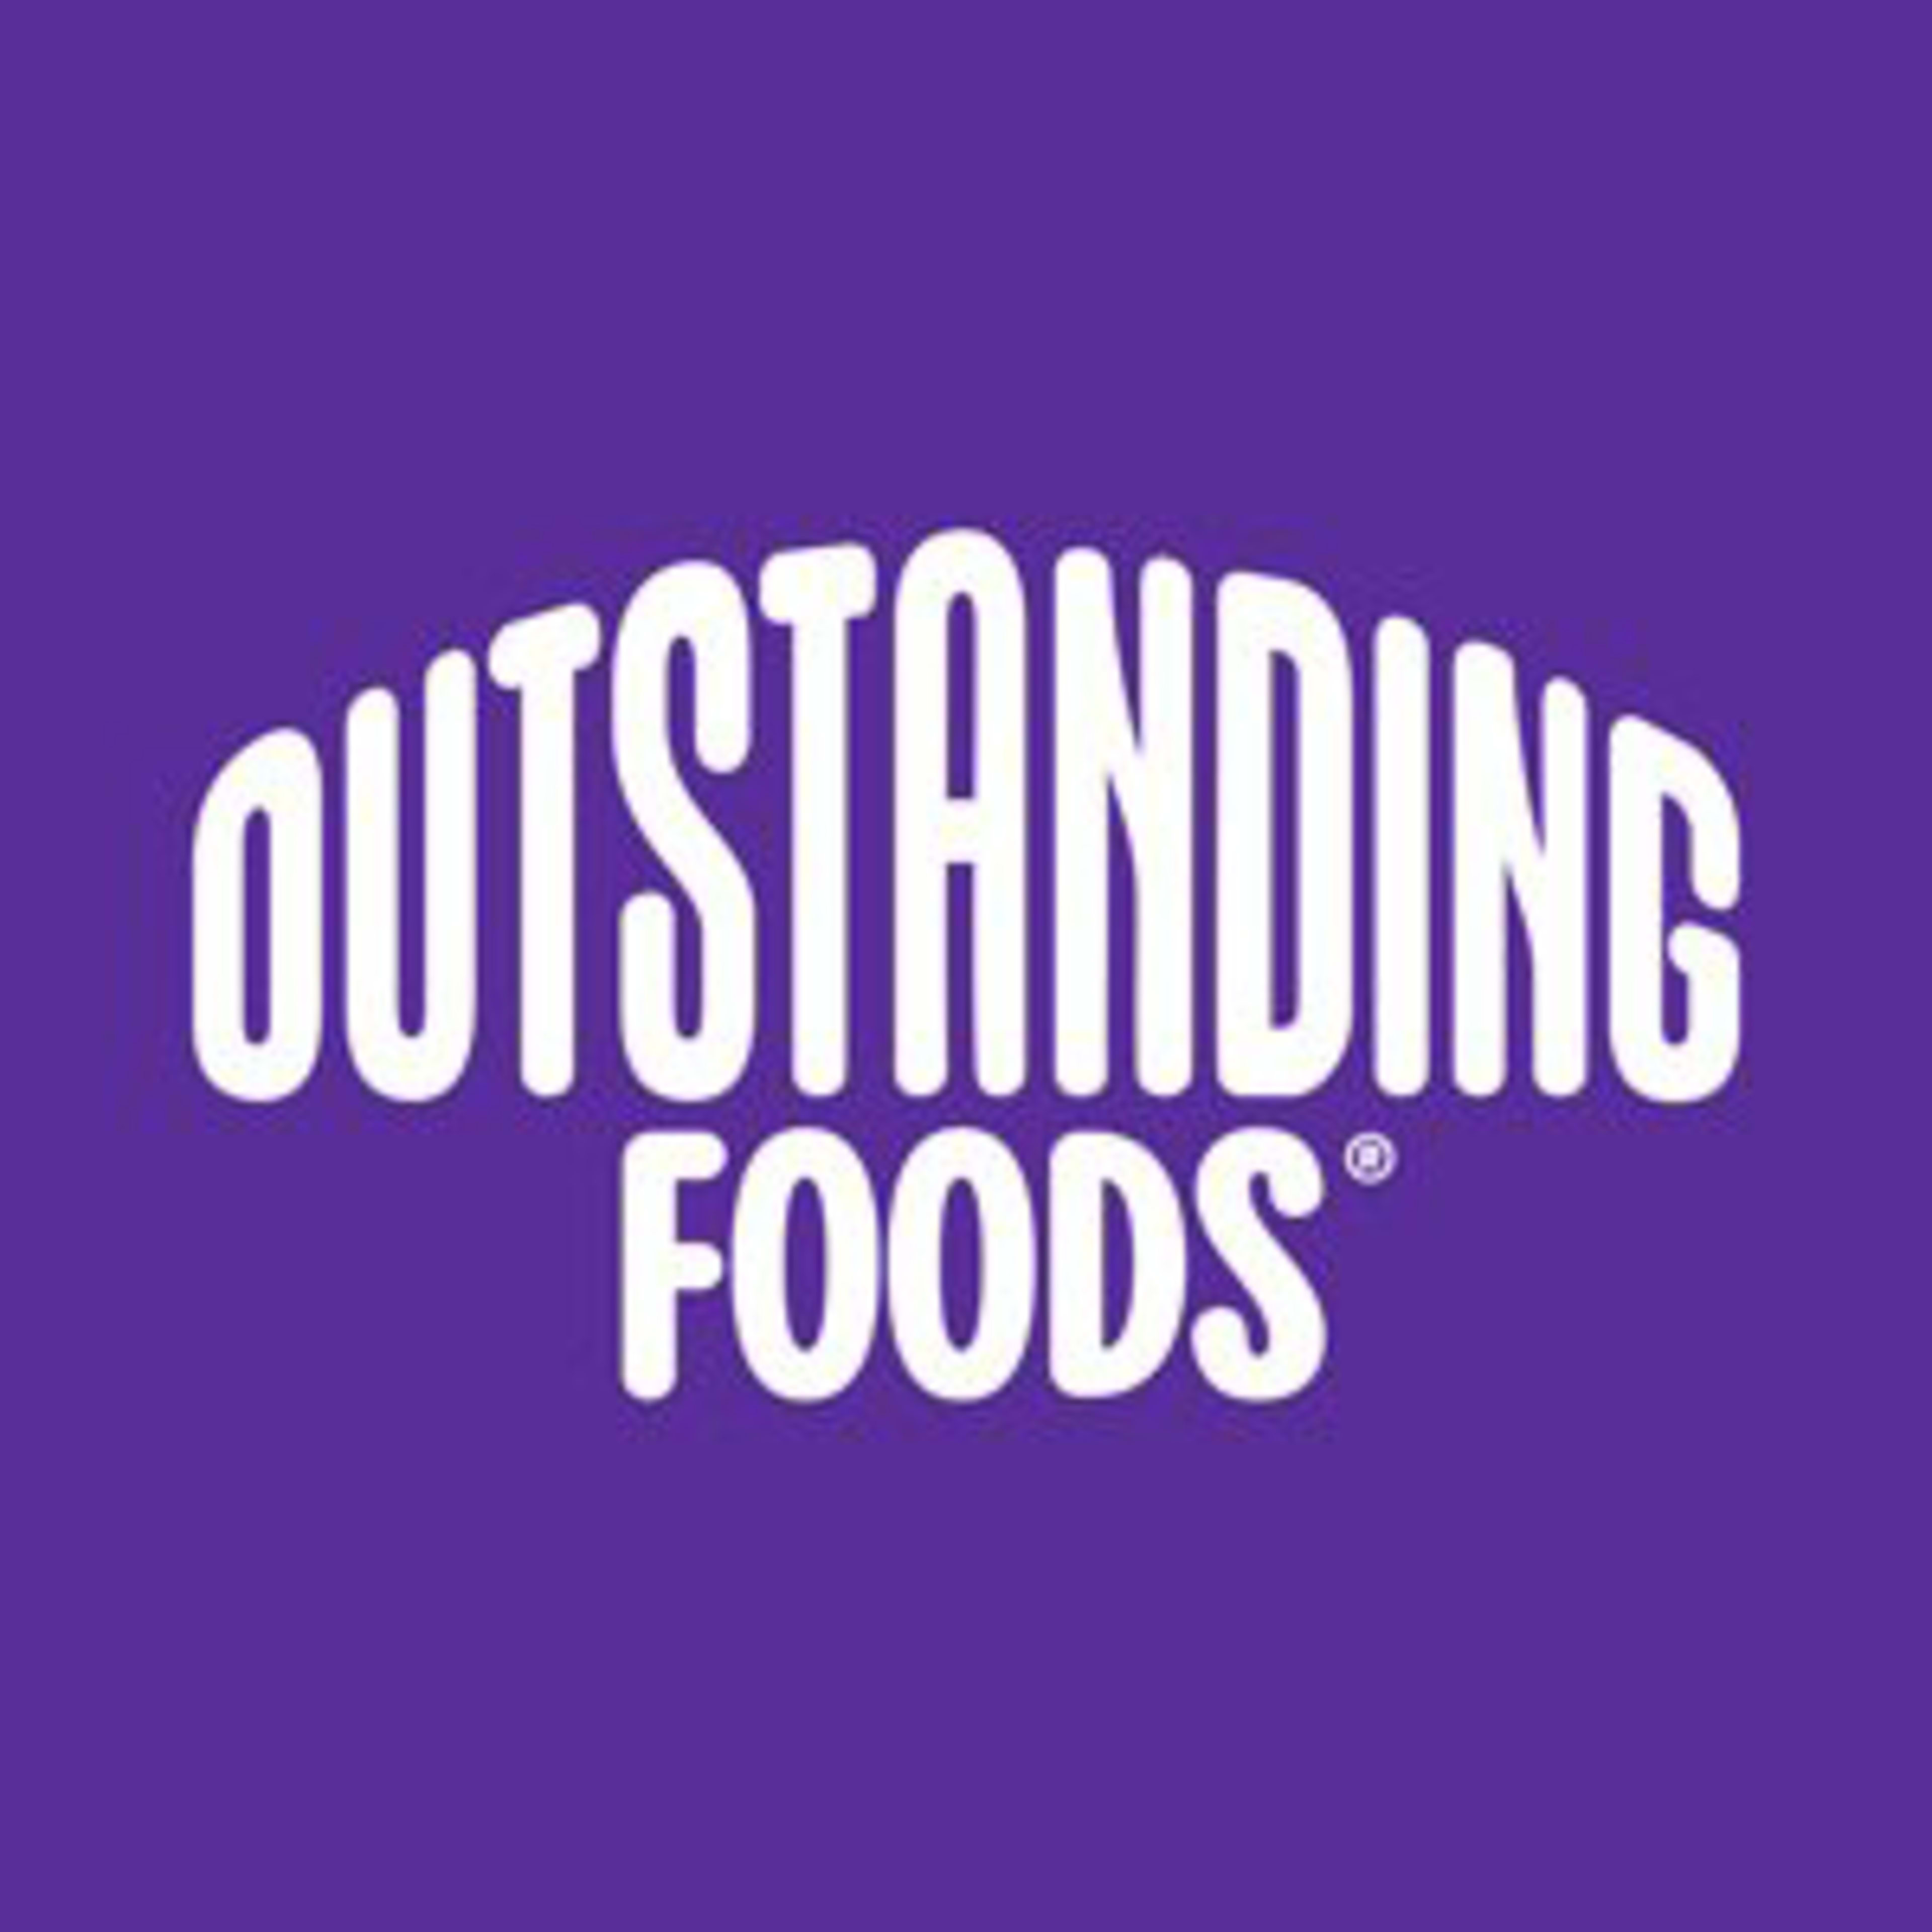 Outstanding FoodsCode